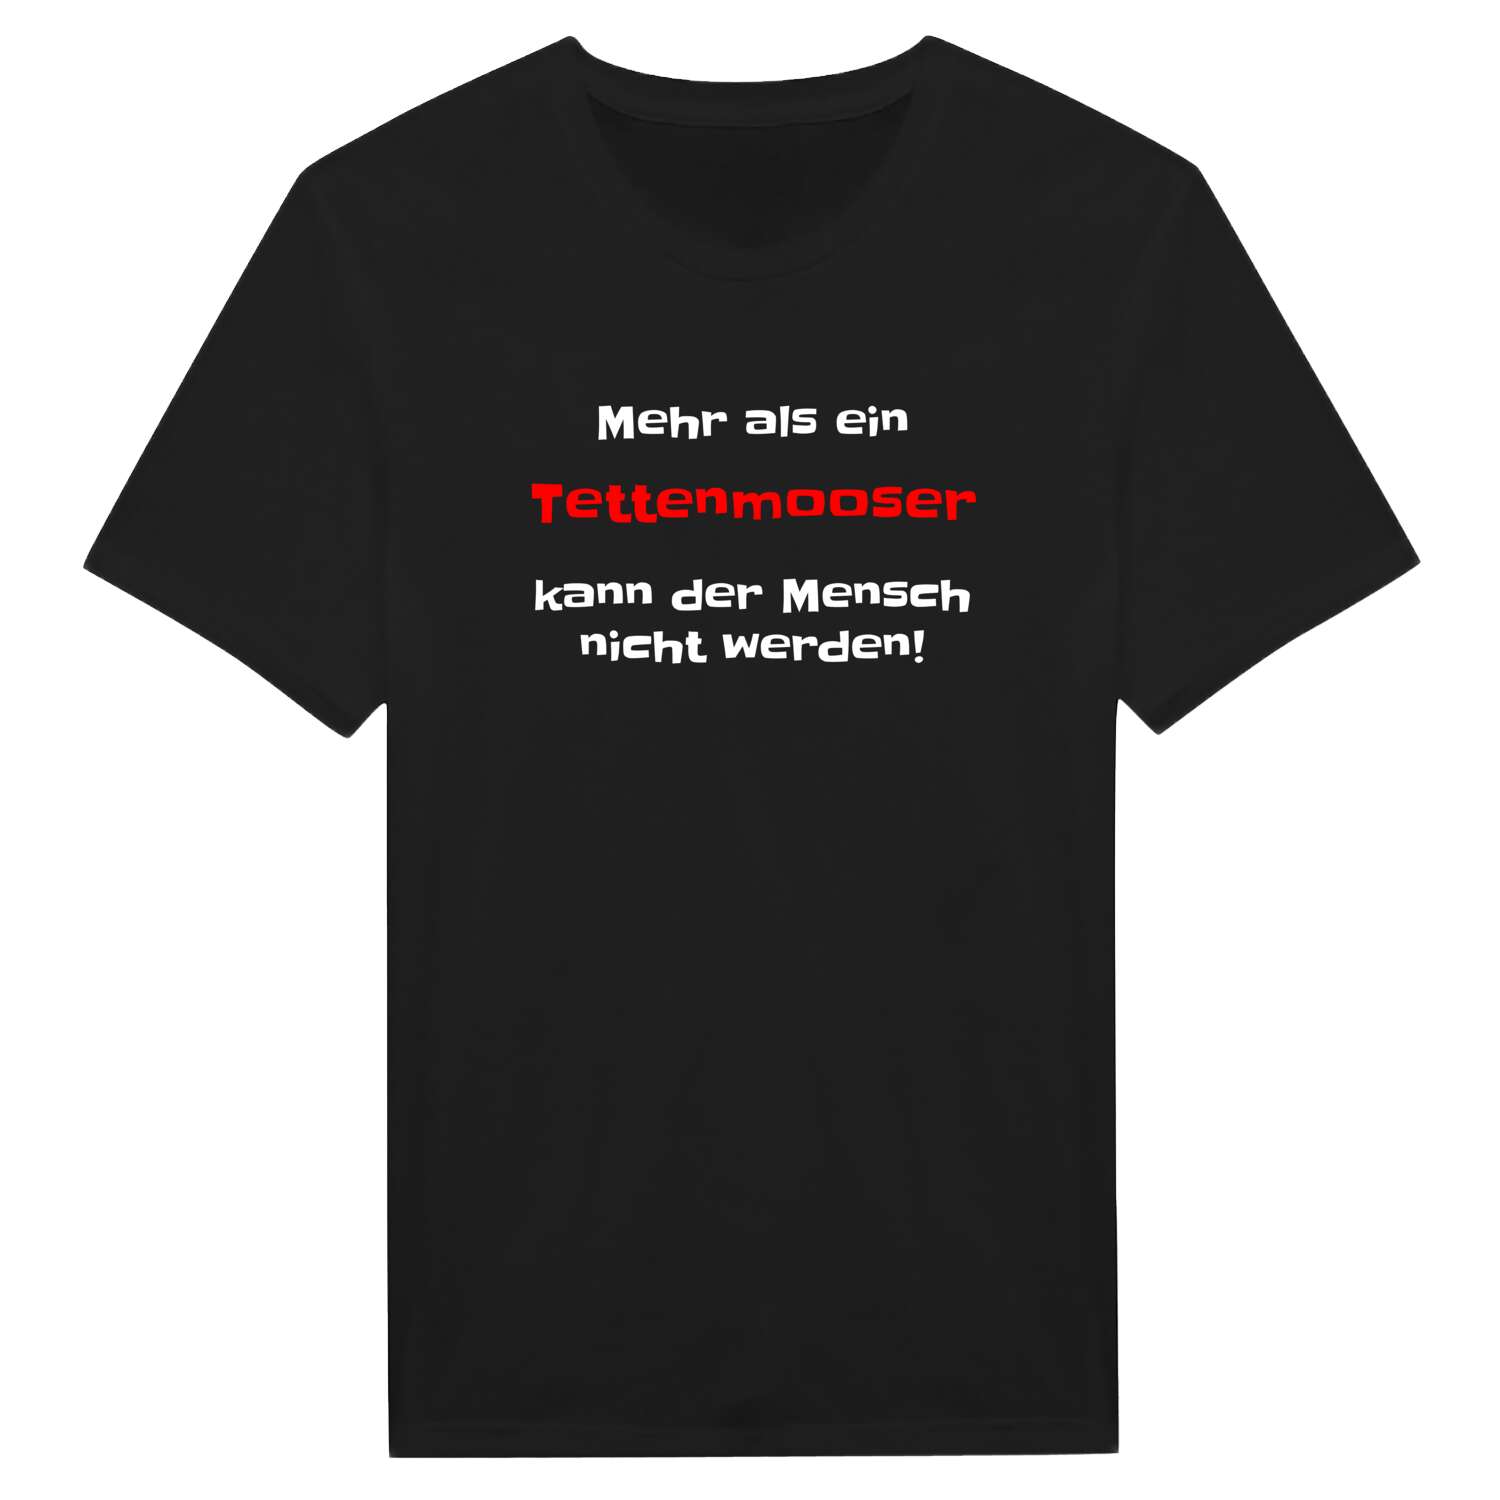 Tettenmoos T-Shirt »Mehr als ein«